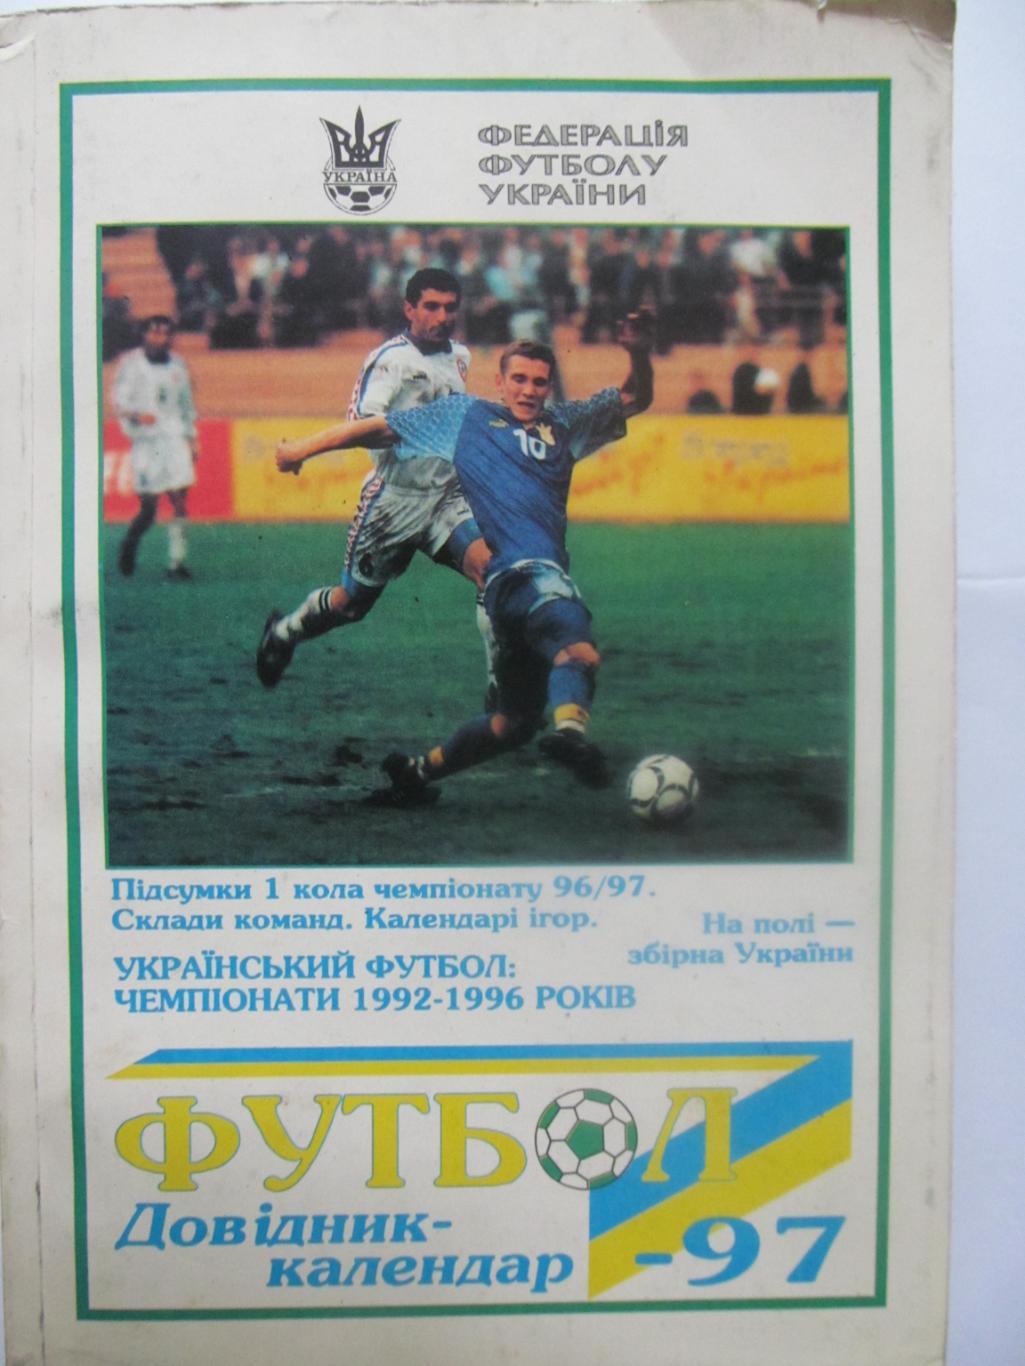 Календар-довідник. 1996/97 (1 коло) , Чемпіонати 1992-1996, Збірна України. *.